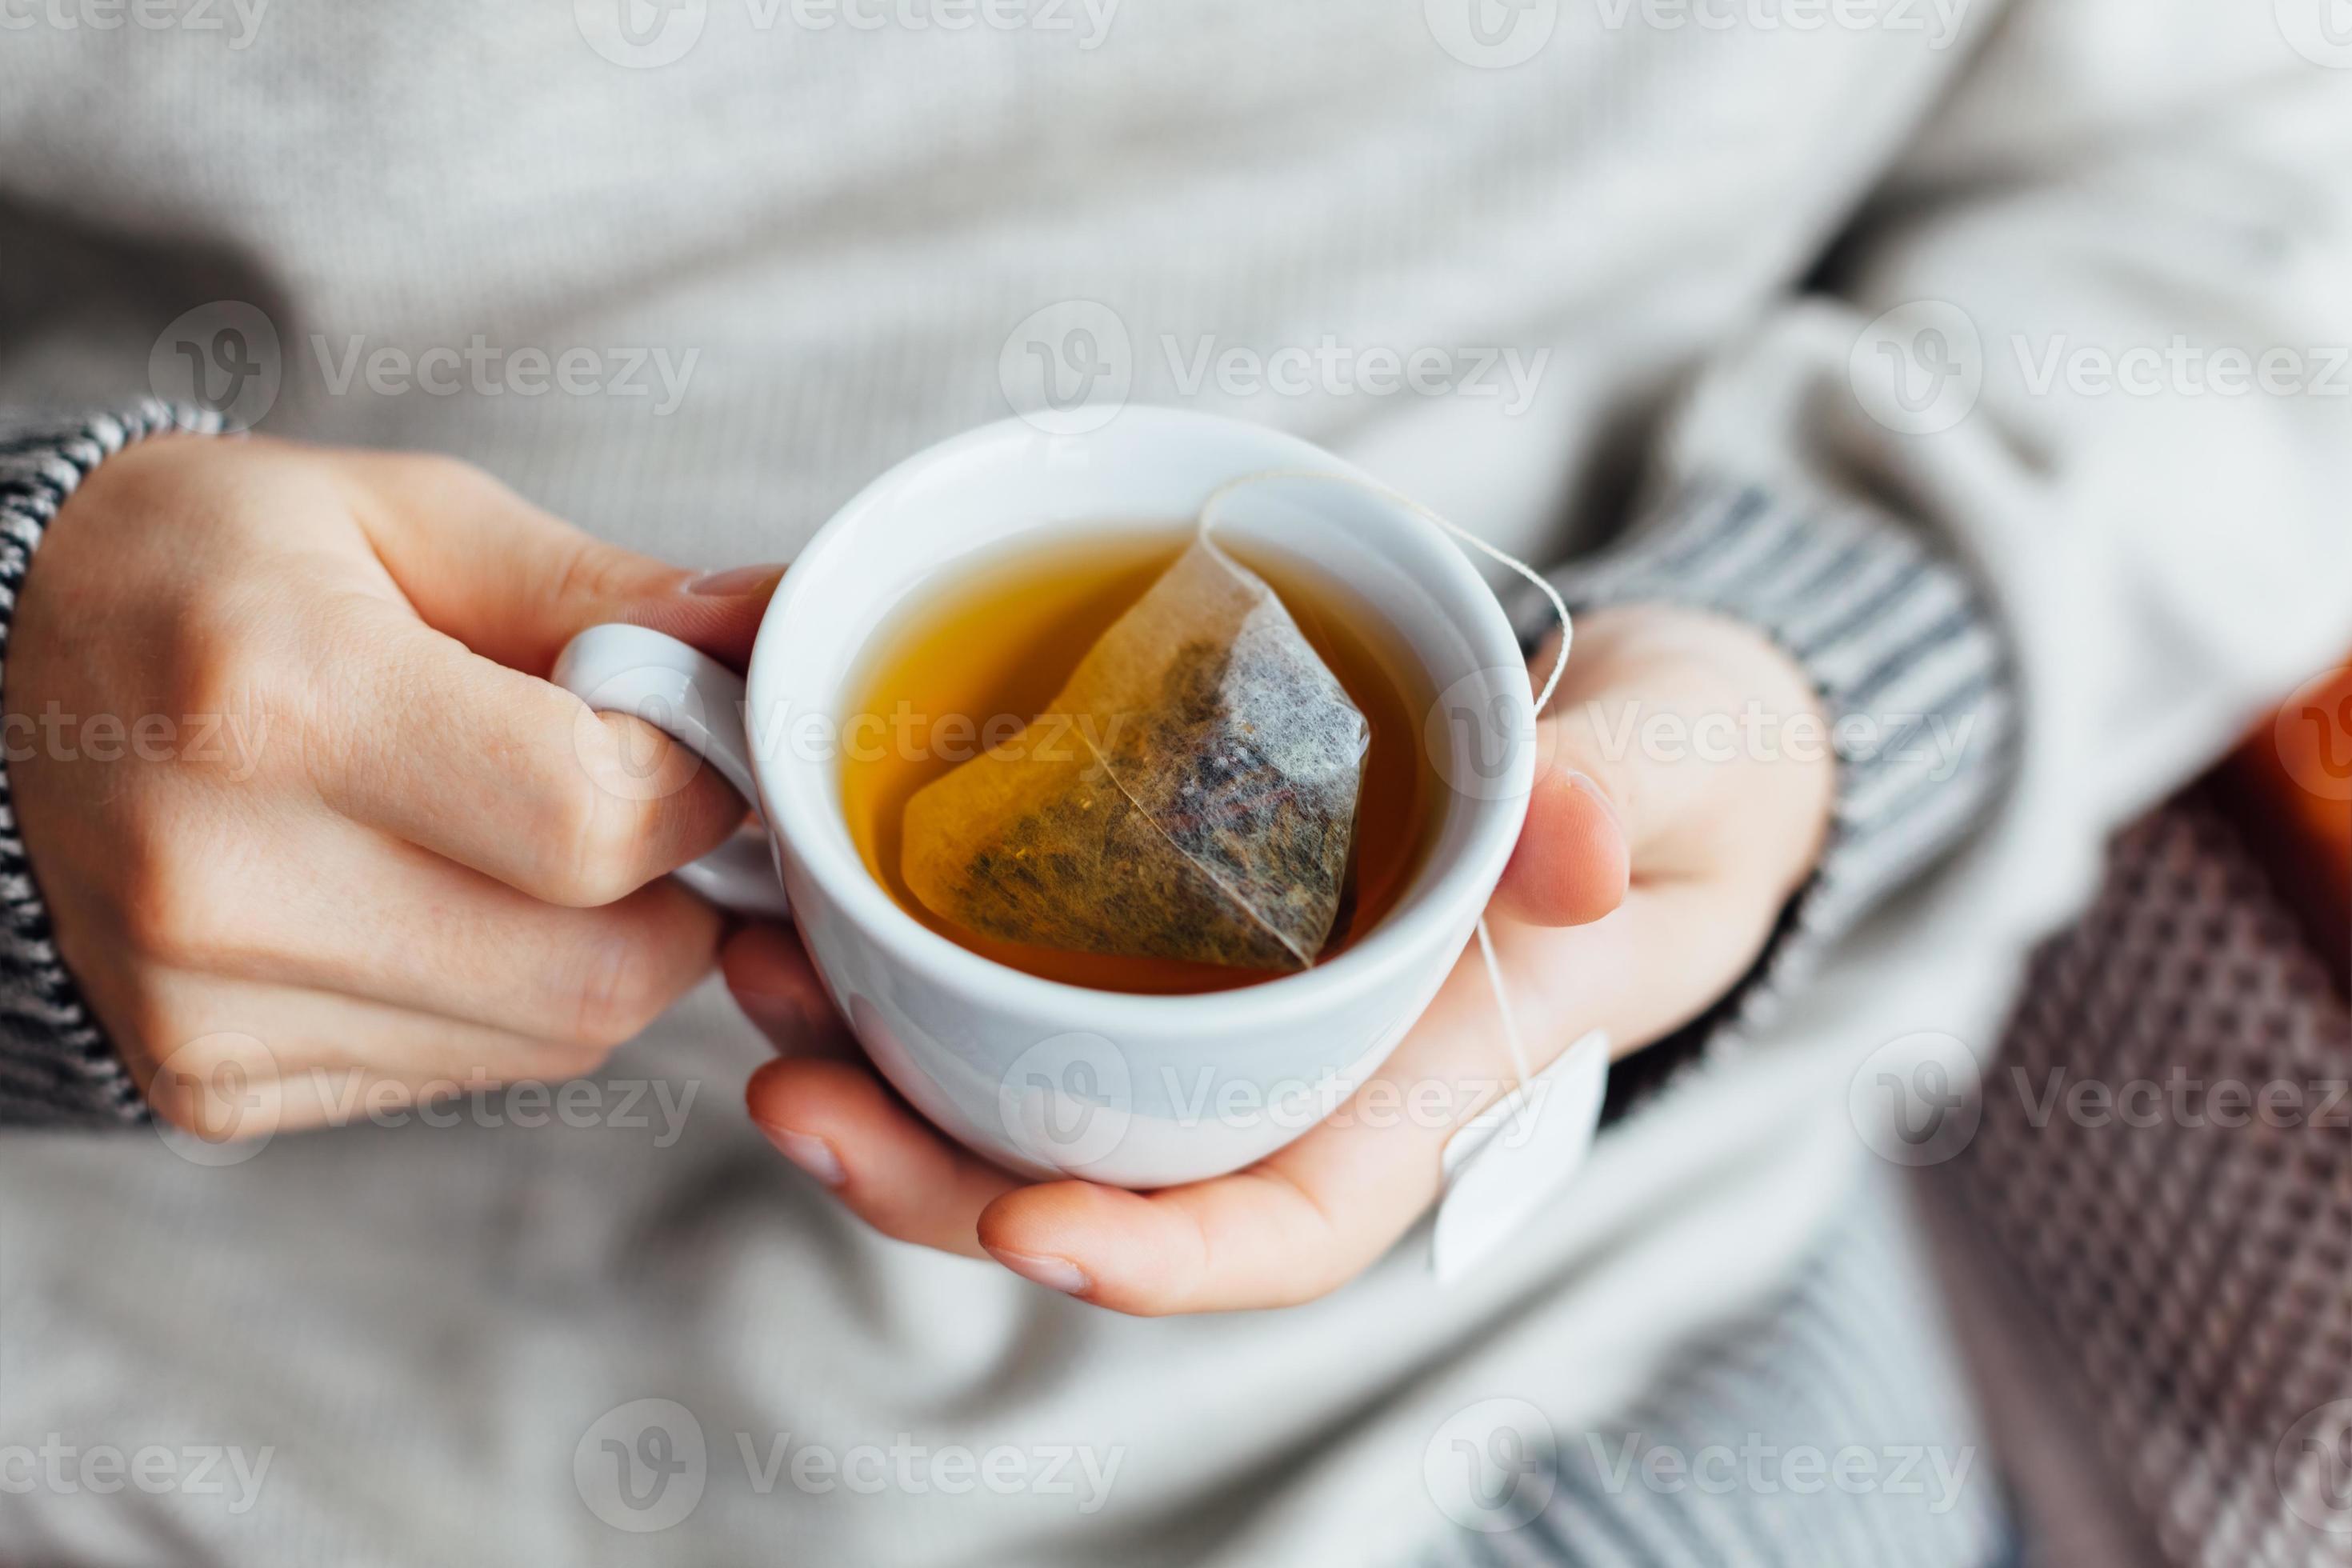 При температуре пьют горячий чай. Горячий чай. Кружка чай. Чайный пакетик в кружке. Теплый чай.